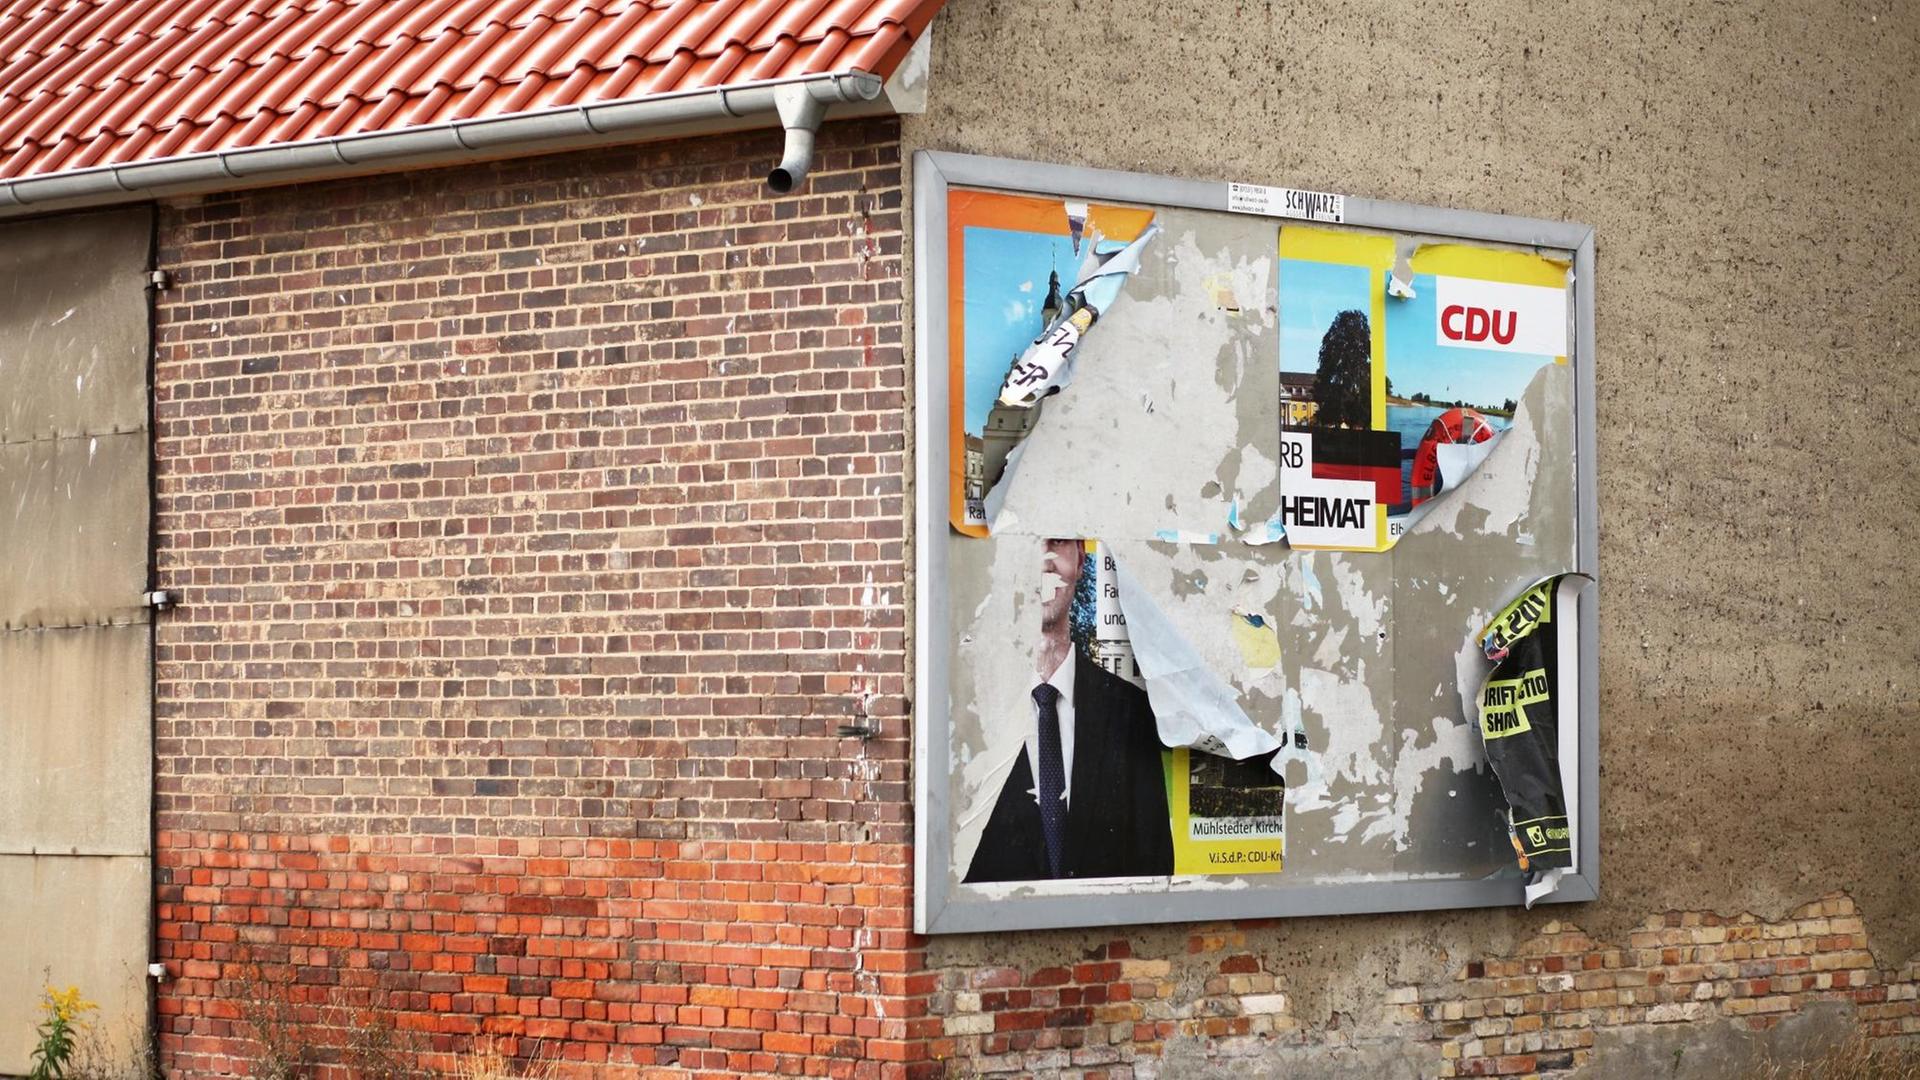 Ein abgerissenes Wahlplakat der CDU hängt an der Wand eines leerstehenden Hauses im Stadttreil Griesen. Auf den verbliebenen Fetzen sind noch der Parteiname und das Wort "Heimat" zu lesen.